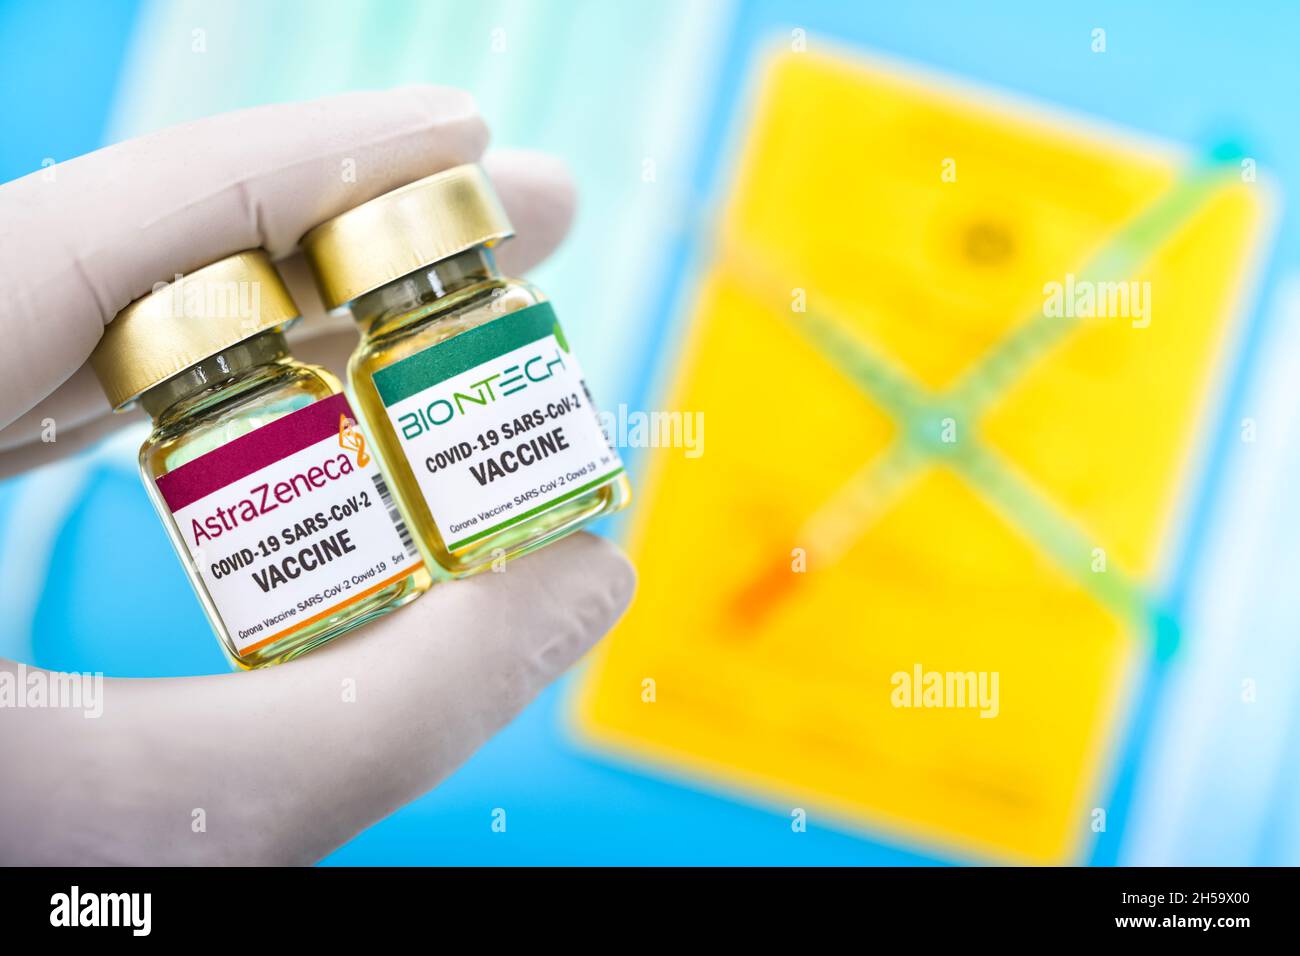 Injektionsfläschchen mit Schriftzug von AstraZeneca und Biontech, Symbolfoto Kreuzimpfung Stock Photo